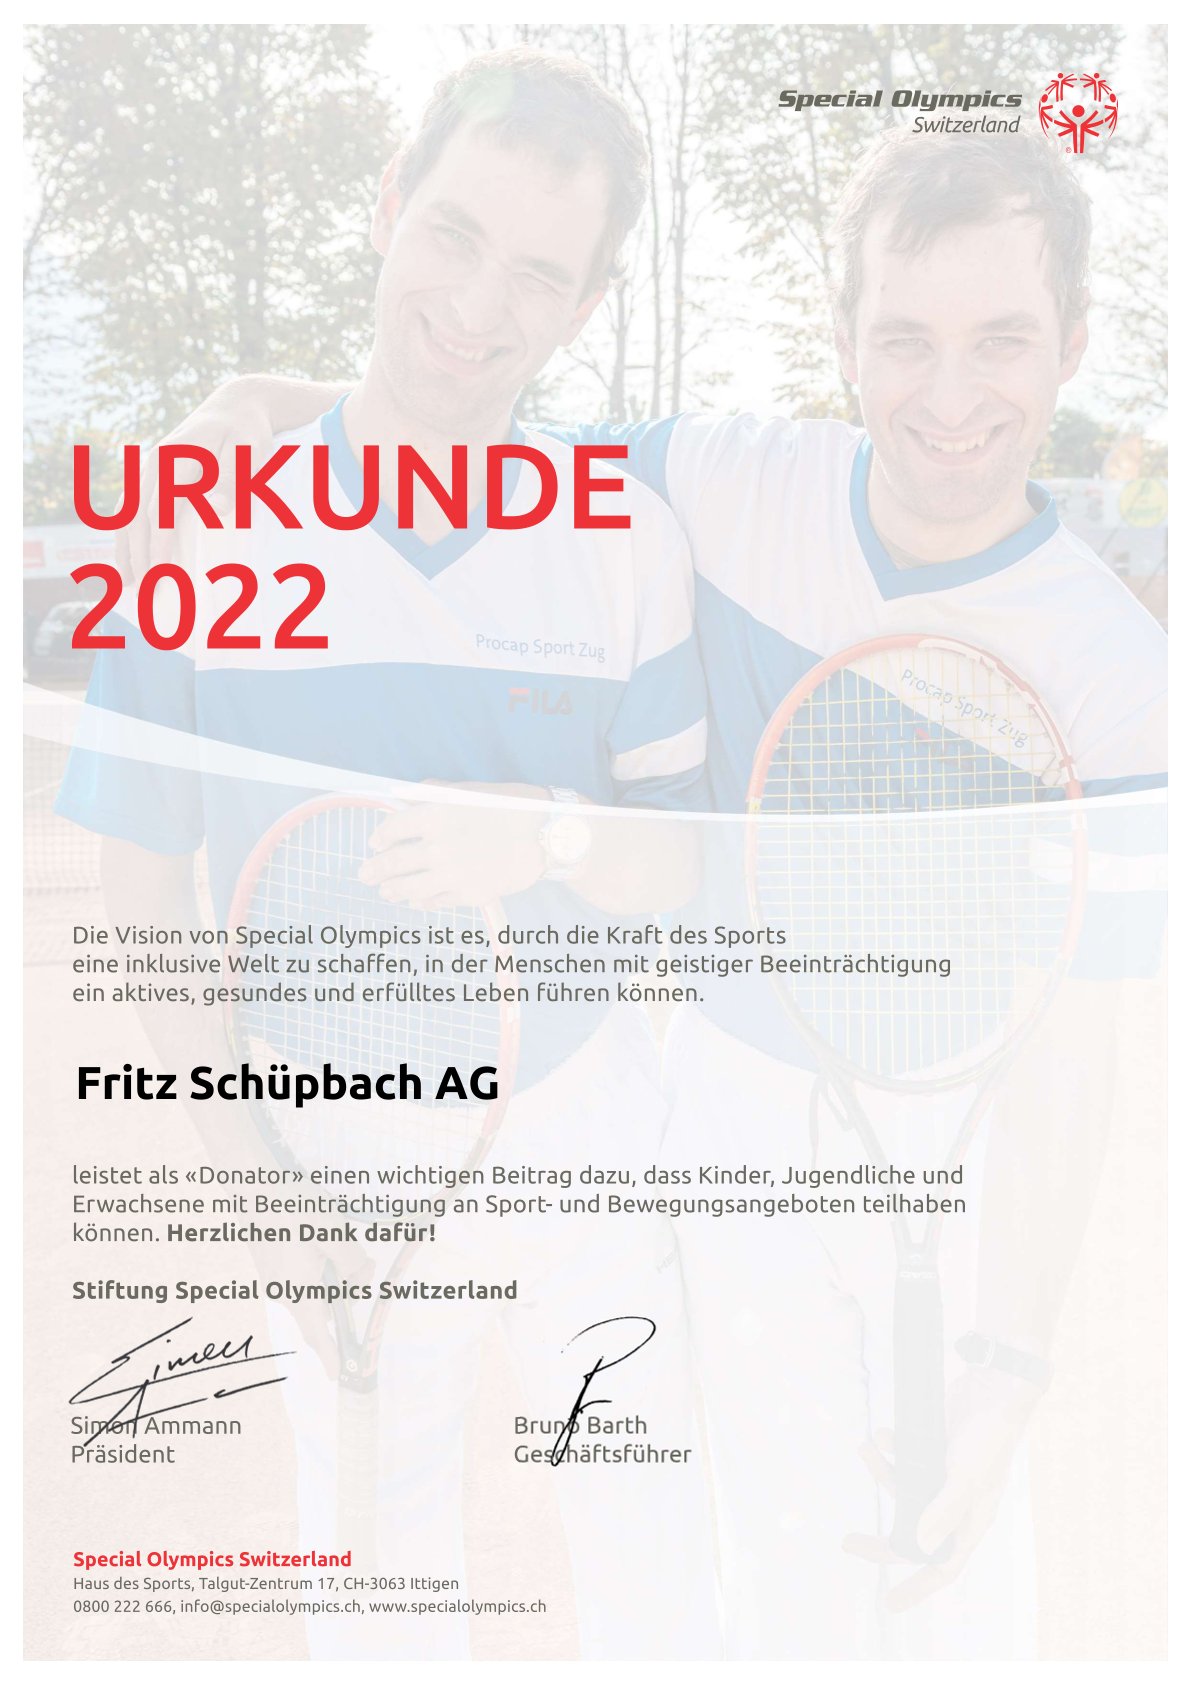 36_Urkunde_2022_Fritz Schüpbach AG.jpg